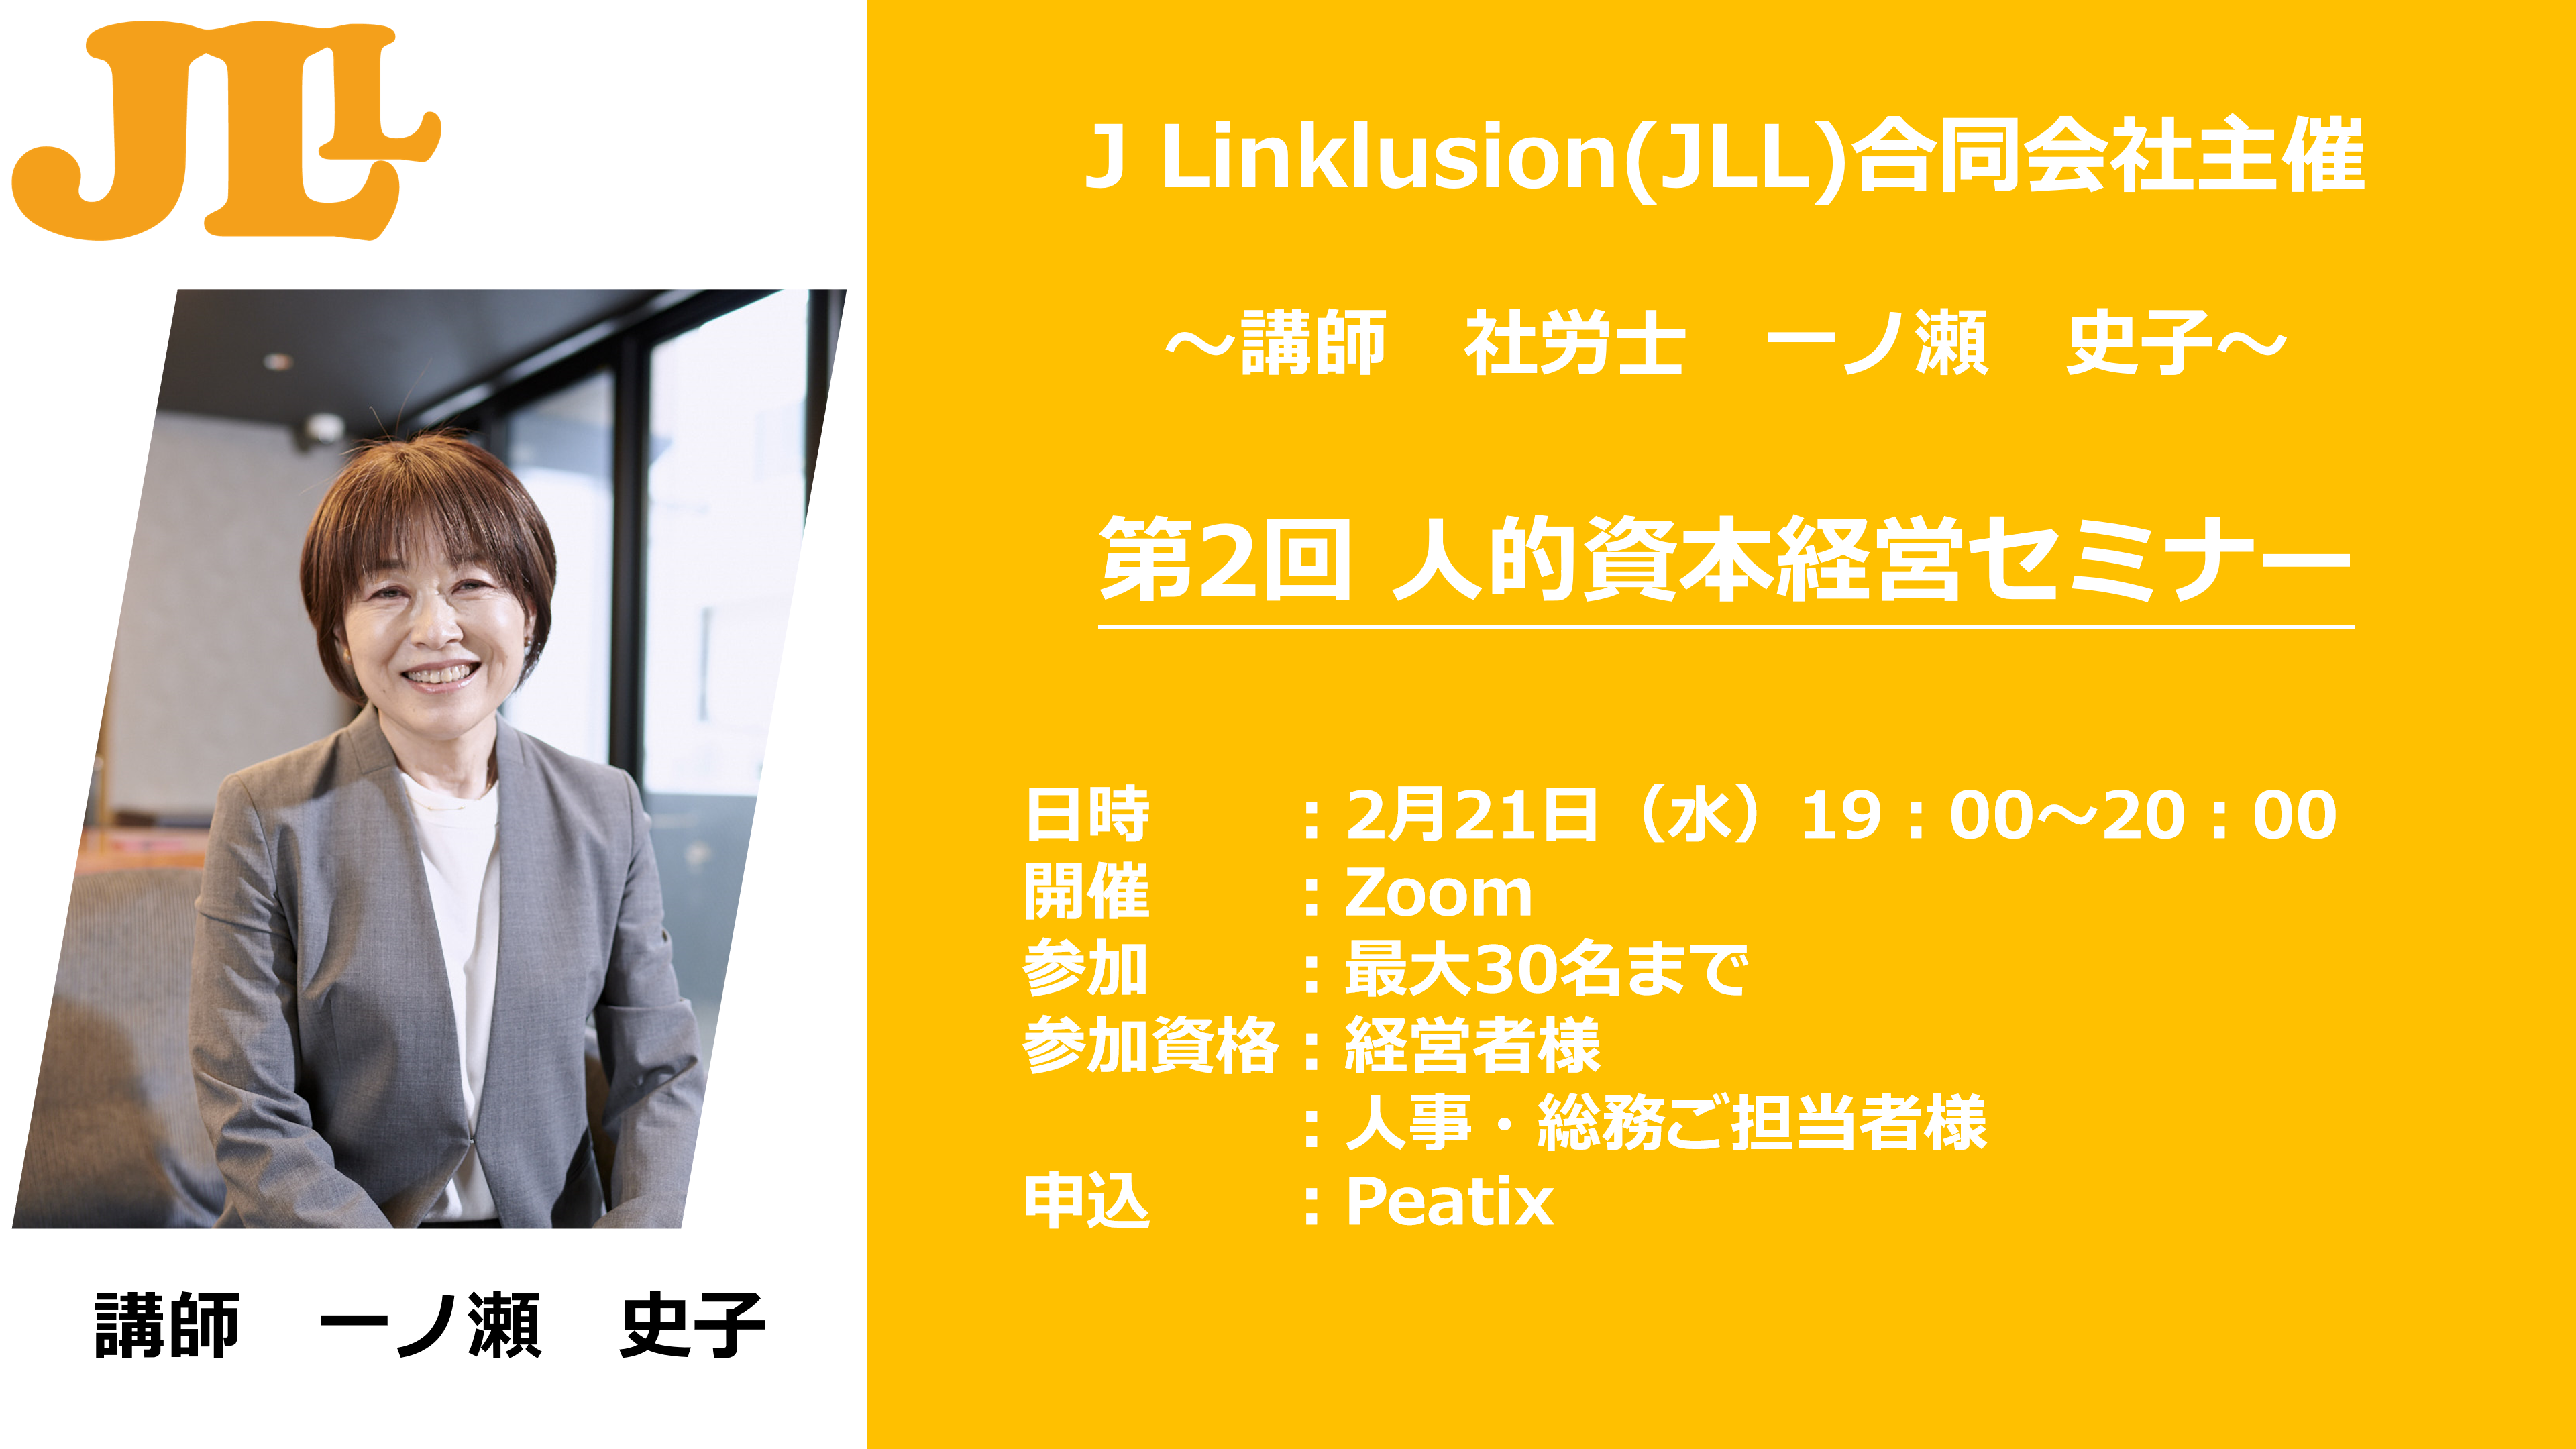 人的資本経営”が企業の課題解決をサポート「J Linklusion合同会社(JLL 